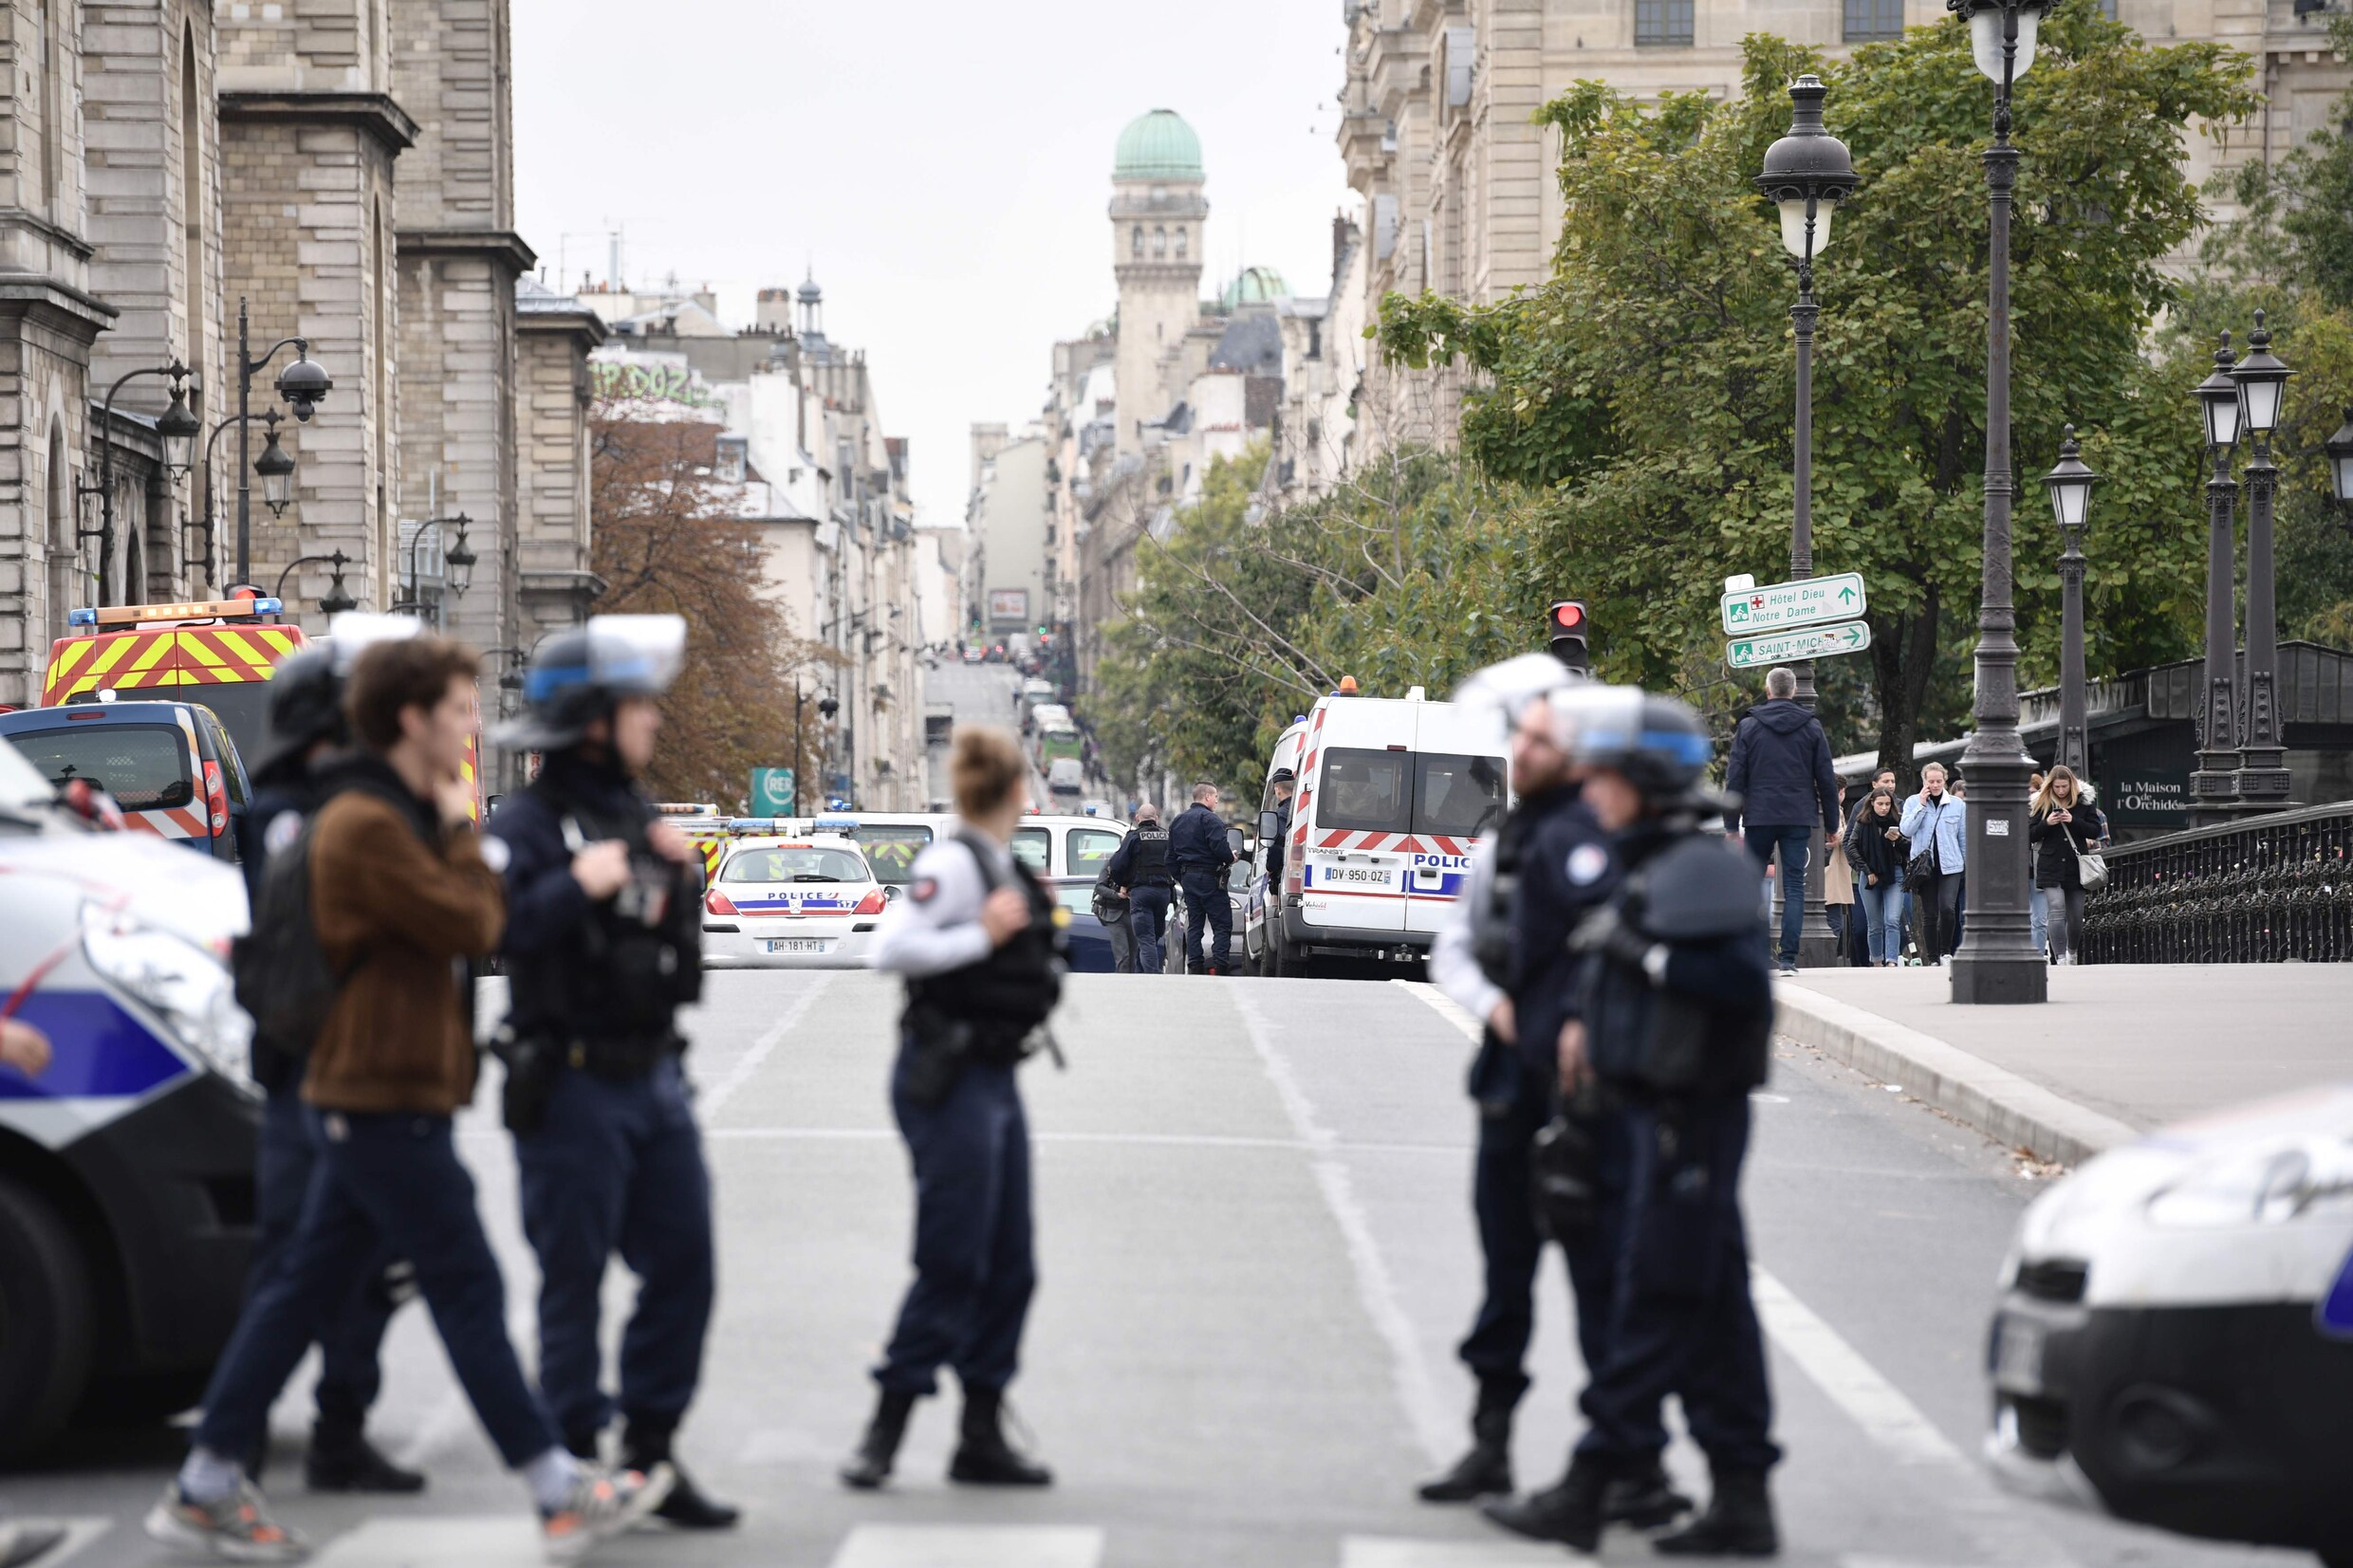 4 doden bij aanval met mes in politiekantoor in Parijs, ook dader doodgeschoten